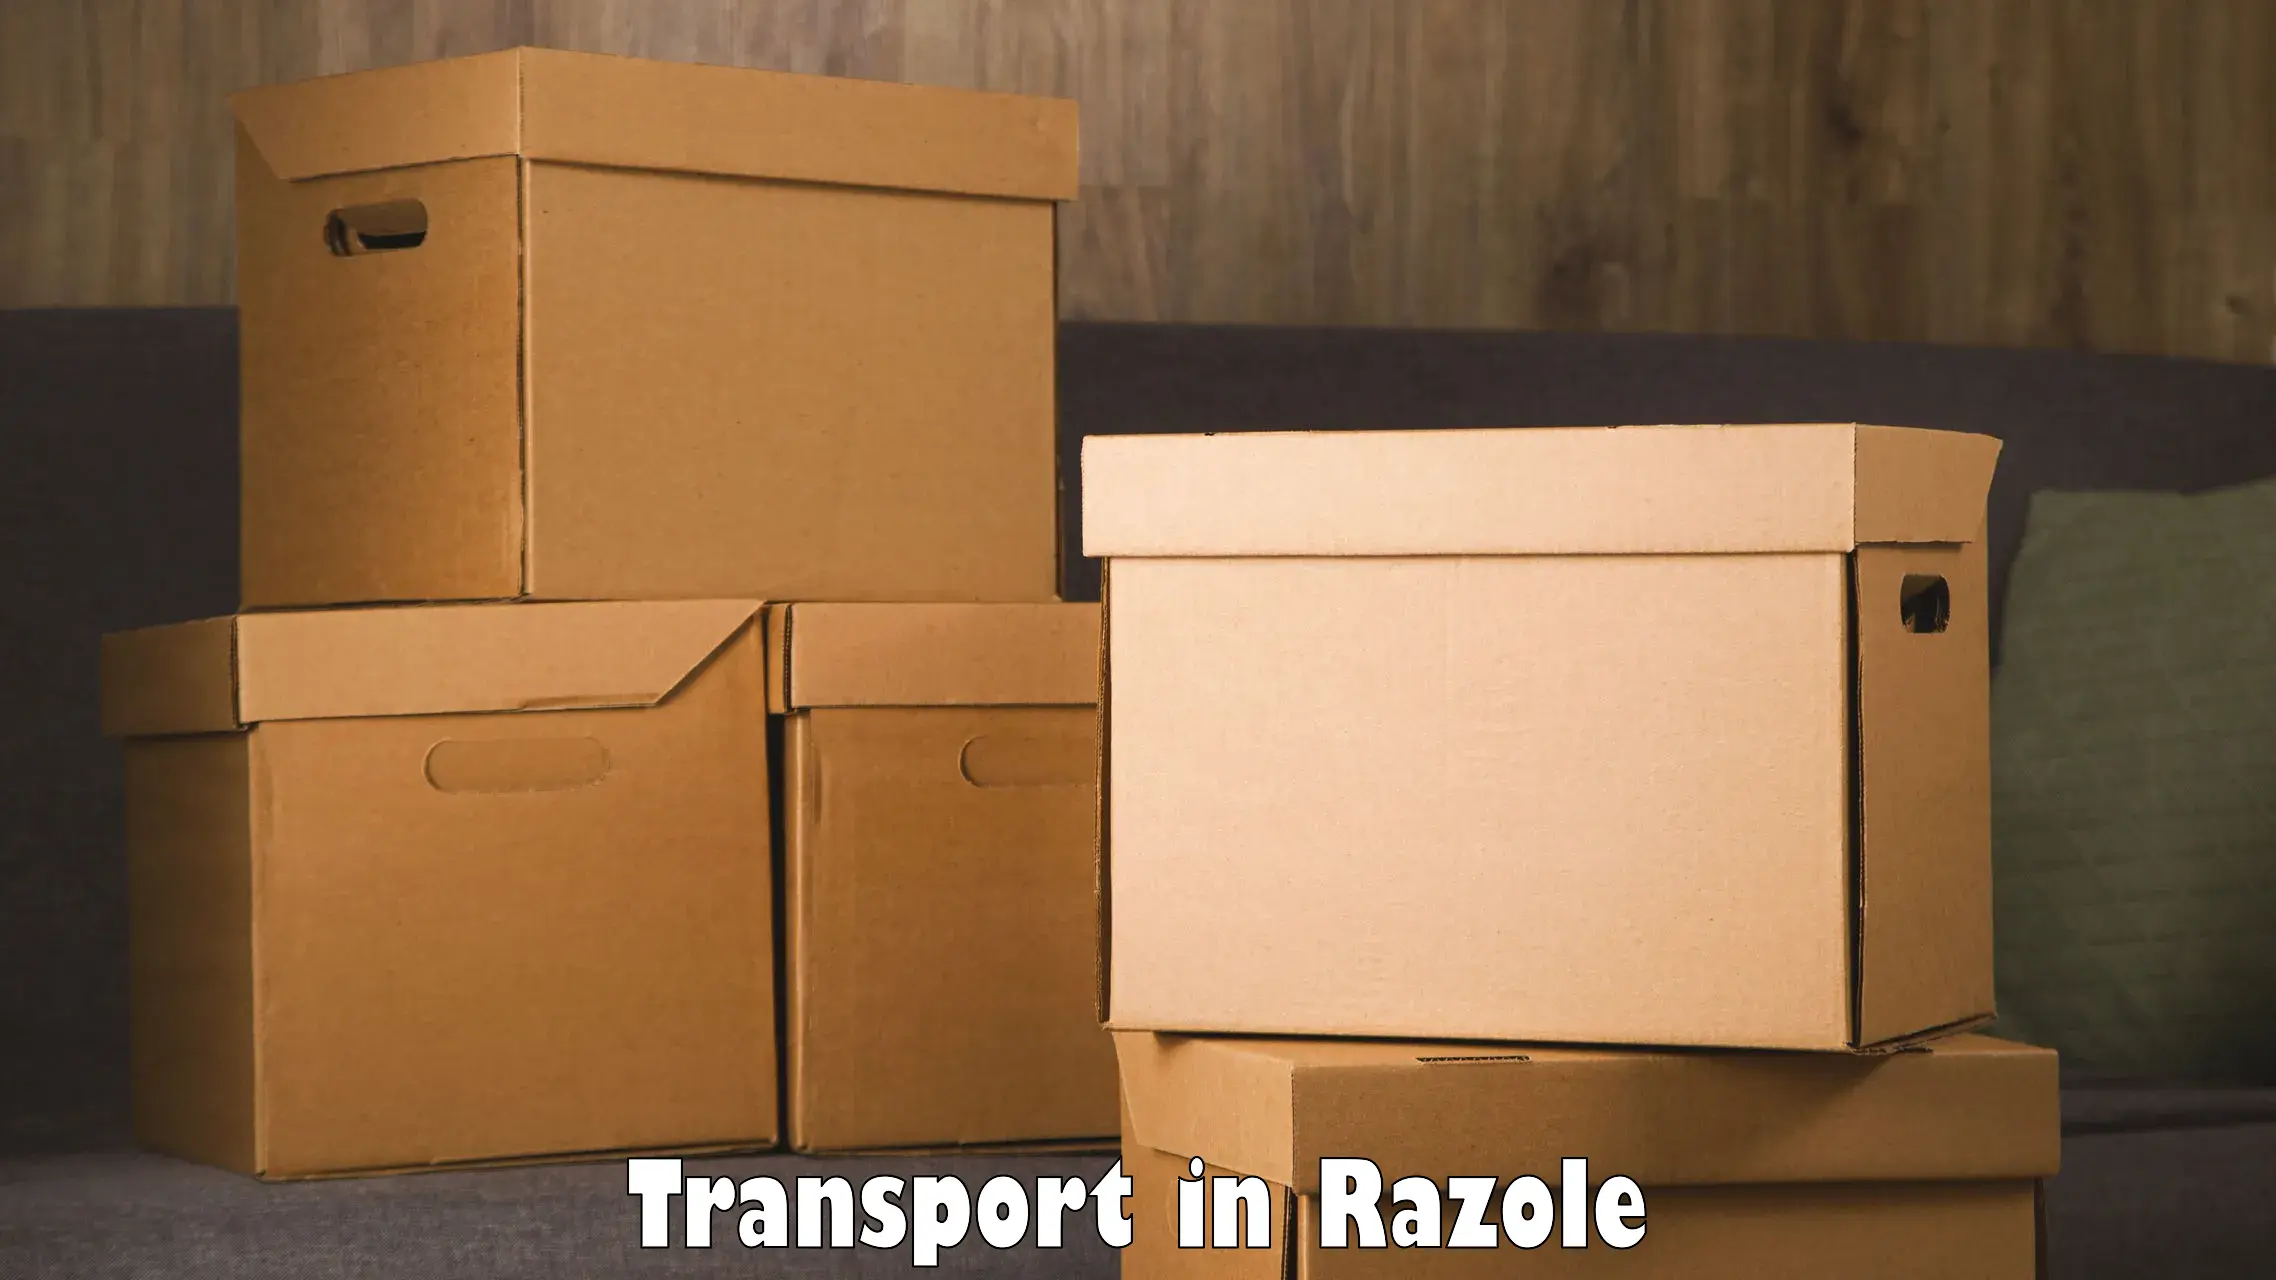 Online transport service in Razole